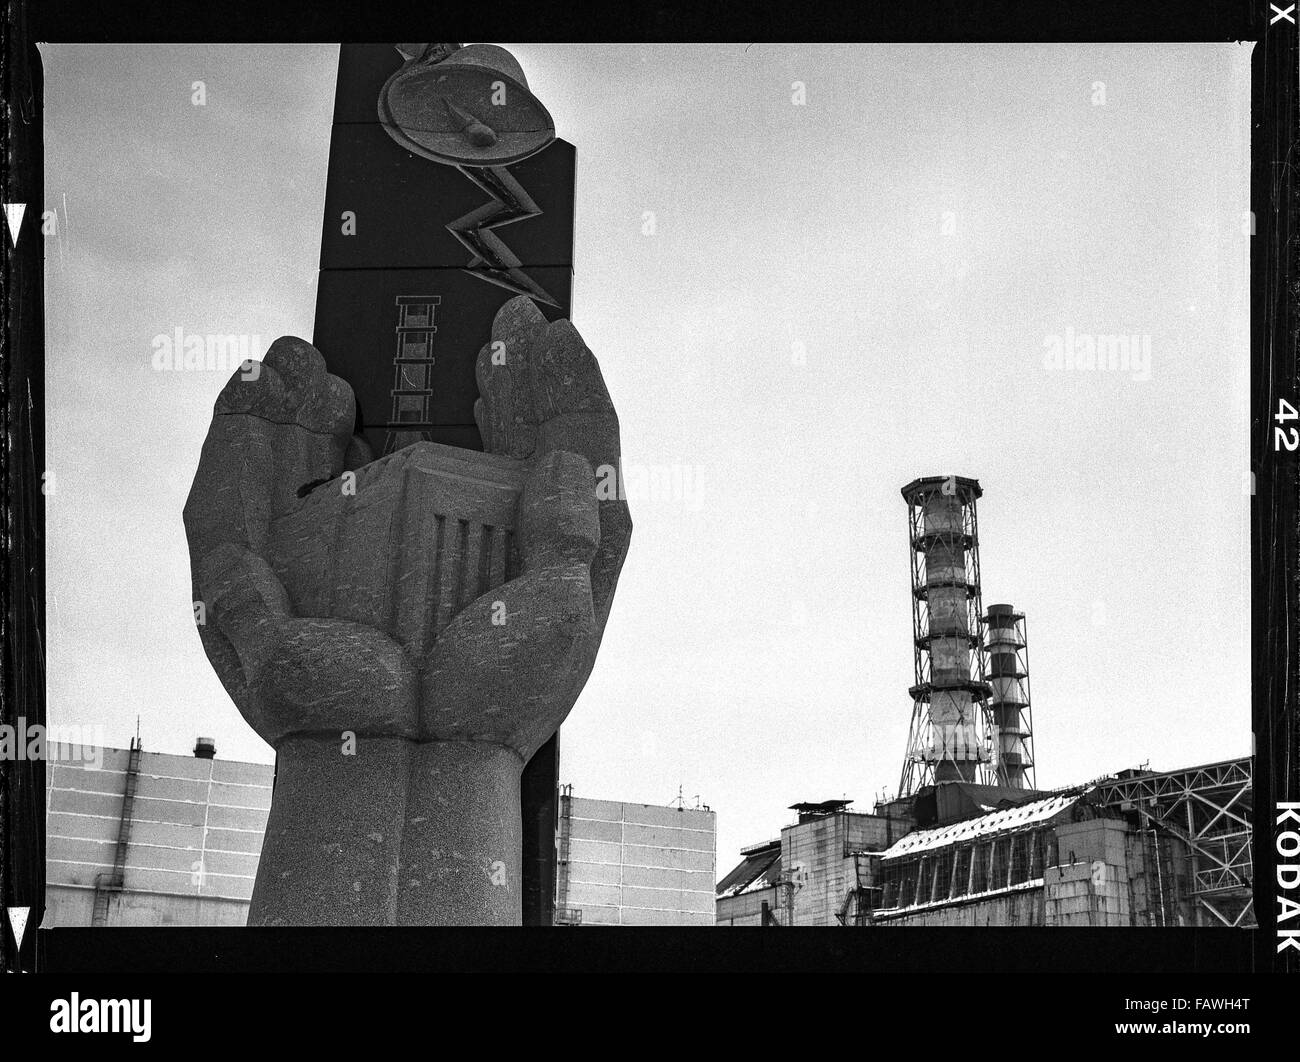 Tschernobyl-Reaktor - Impressionen aus Pripjat eine Geisterstadt in der Ukraine, die 1970 im Zusammenhang mit dem Bau des Kernkraftwerks Tschernobyl gegründet und infolge des nuklearen Unfalls in 1986 geräumt wurde. Zum Zeitpunkt der Katastrophe am 26. April 1986 lebte fast 50.000 Menschen. Die meisten Bewohner waren Arbeiter in dem Atomkraftwerk. 26. April 2015, den 30. Jahrestag der Reaktorkatastrophe von Tschernobyl. In einer Studie unter der Leitung von Anatoly Dyatlov aufgetreten Simulation eines vollständigen Stromausfalls aufgrund schwerer Verstöße gegen die geltenden Sicherheitsvorschriften req Stockfoto